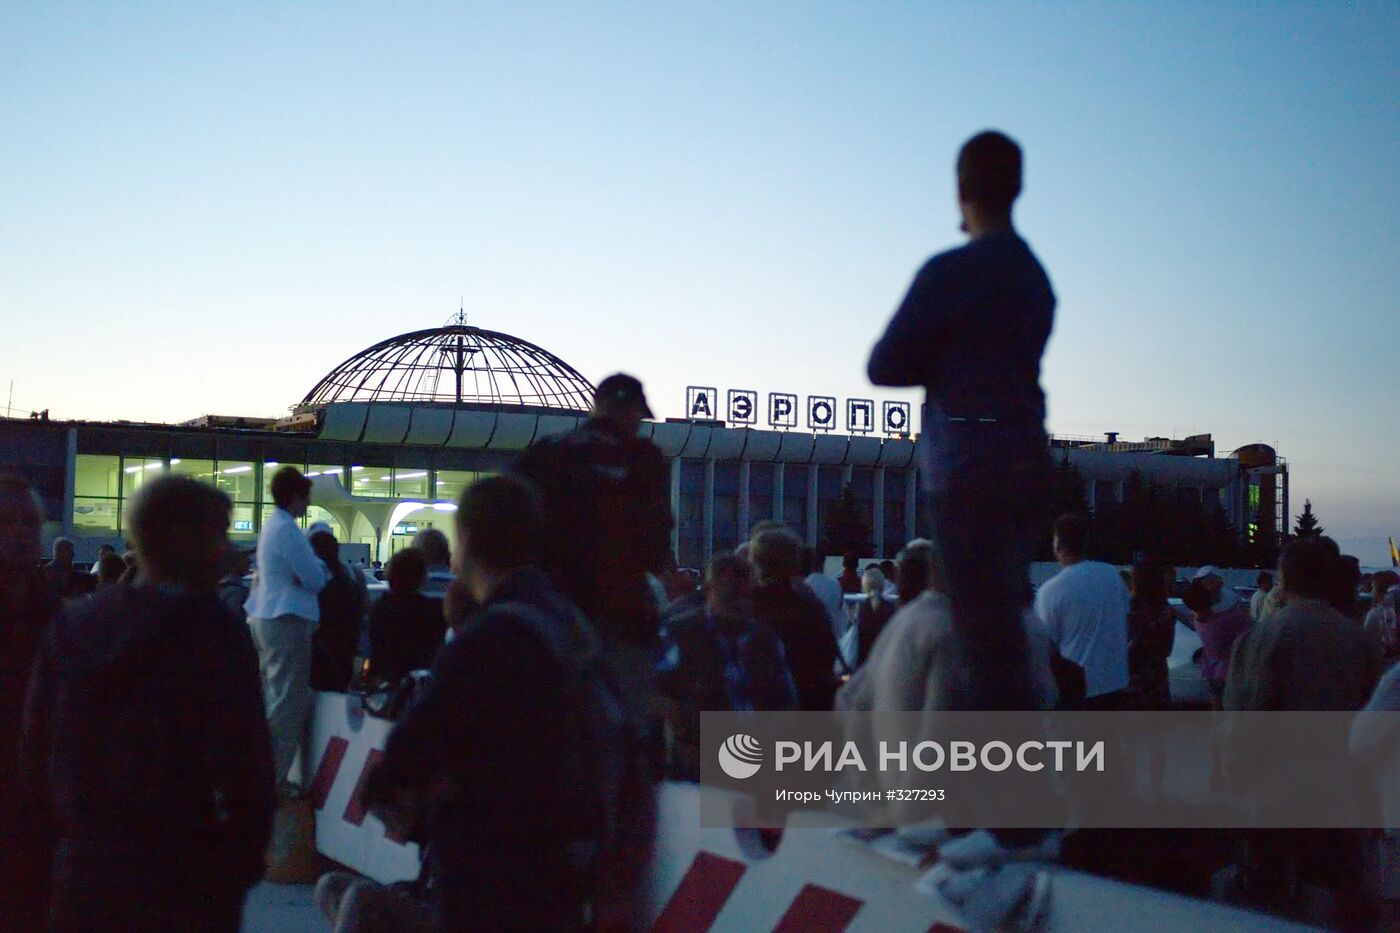 Аэропорт "Храброво" закрыт из-за угрозы теракта